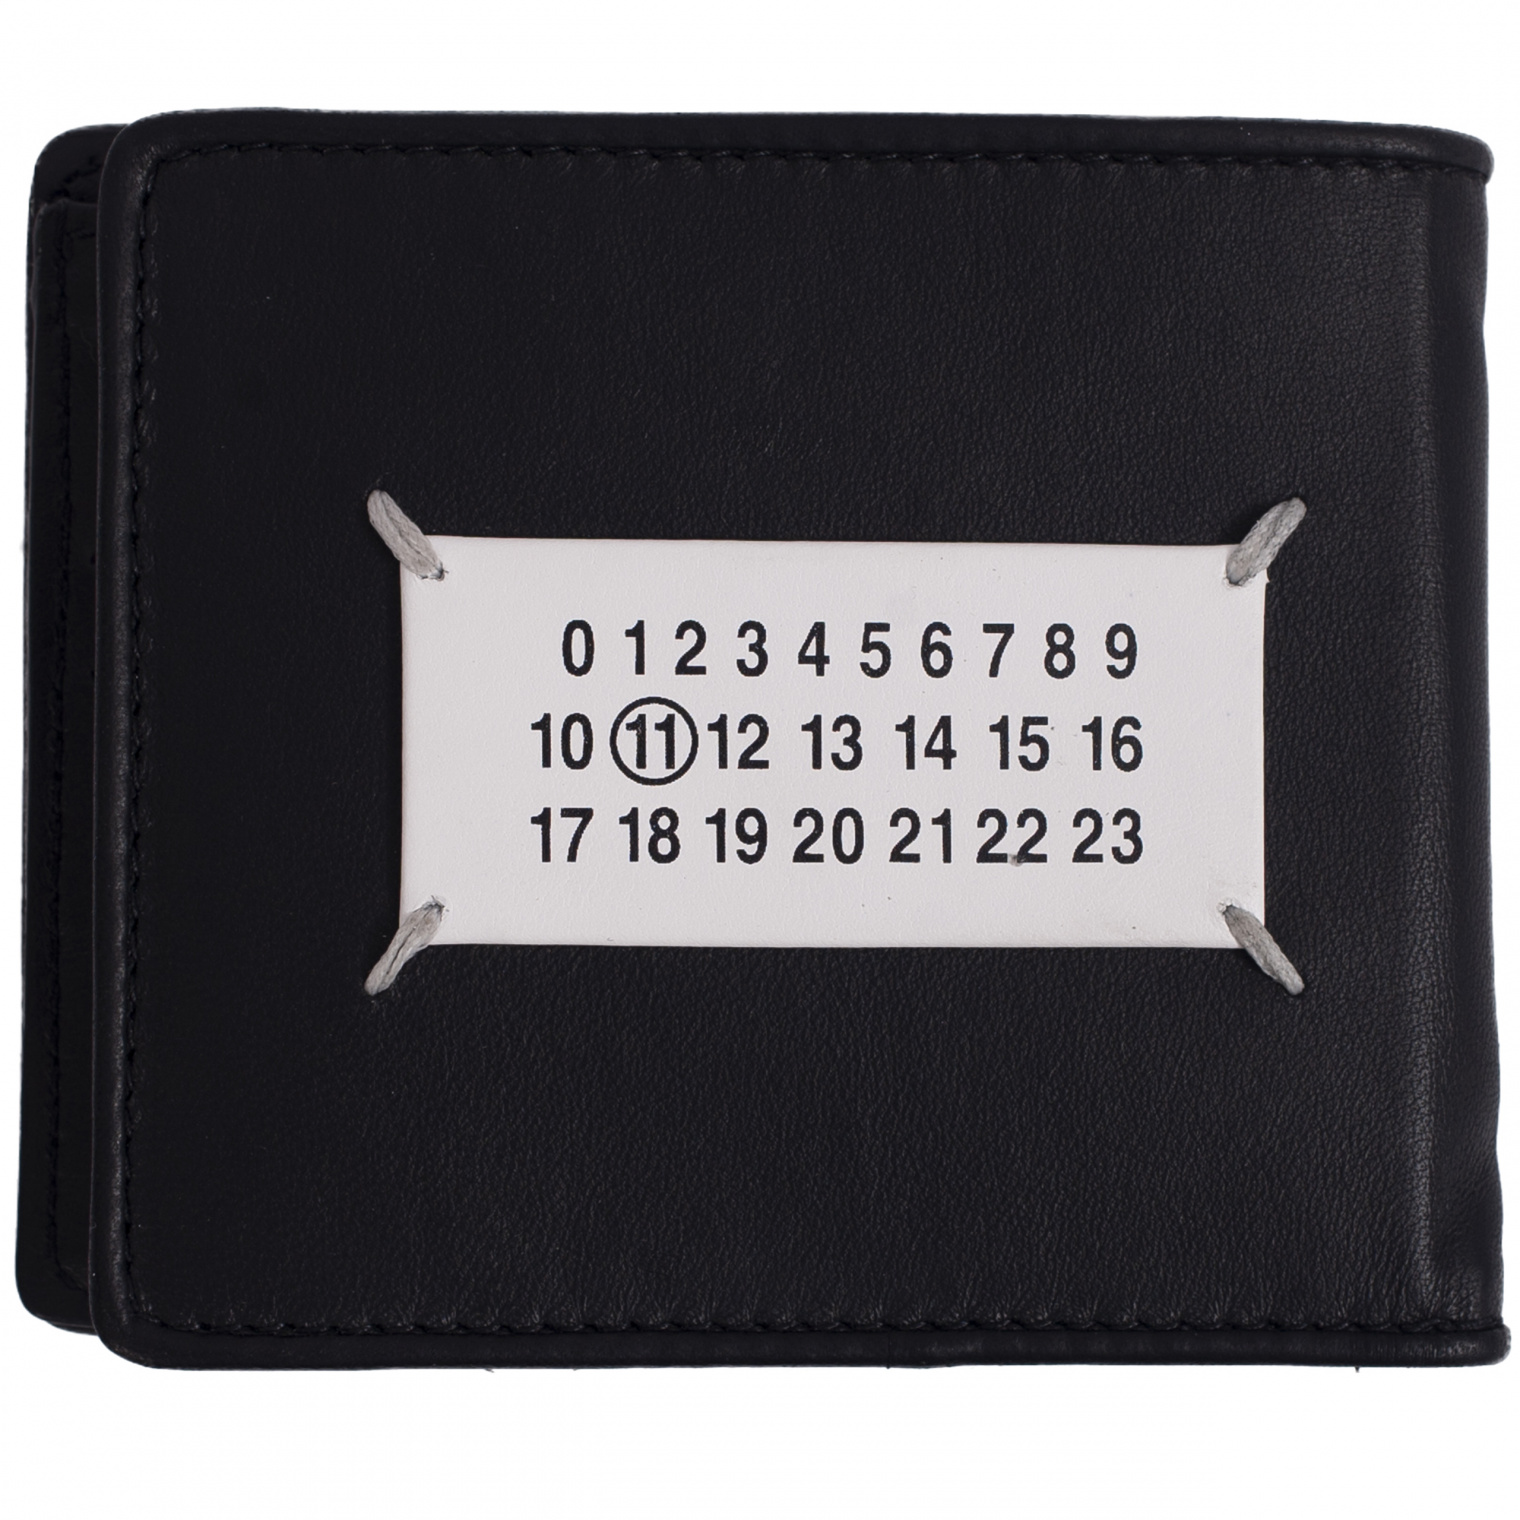 Buy Maison Margiela men black leather glam slam wallet for $625 